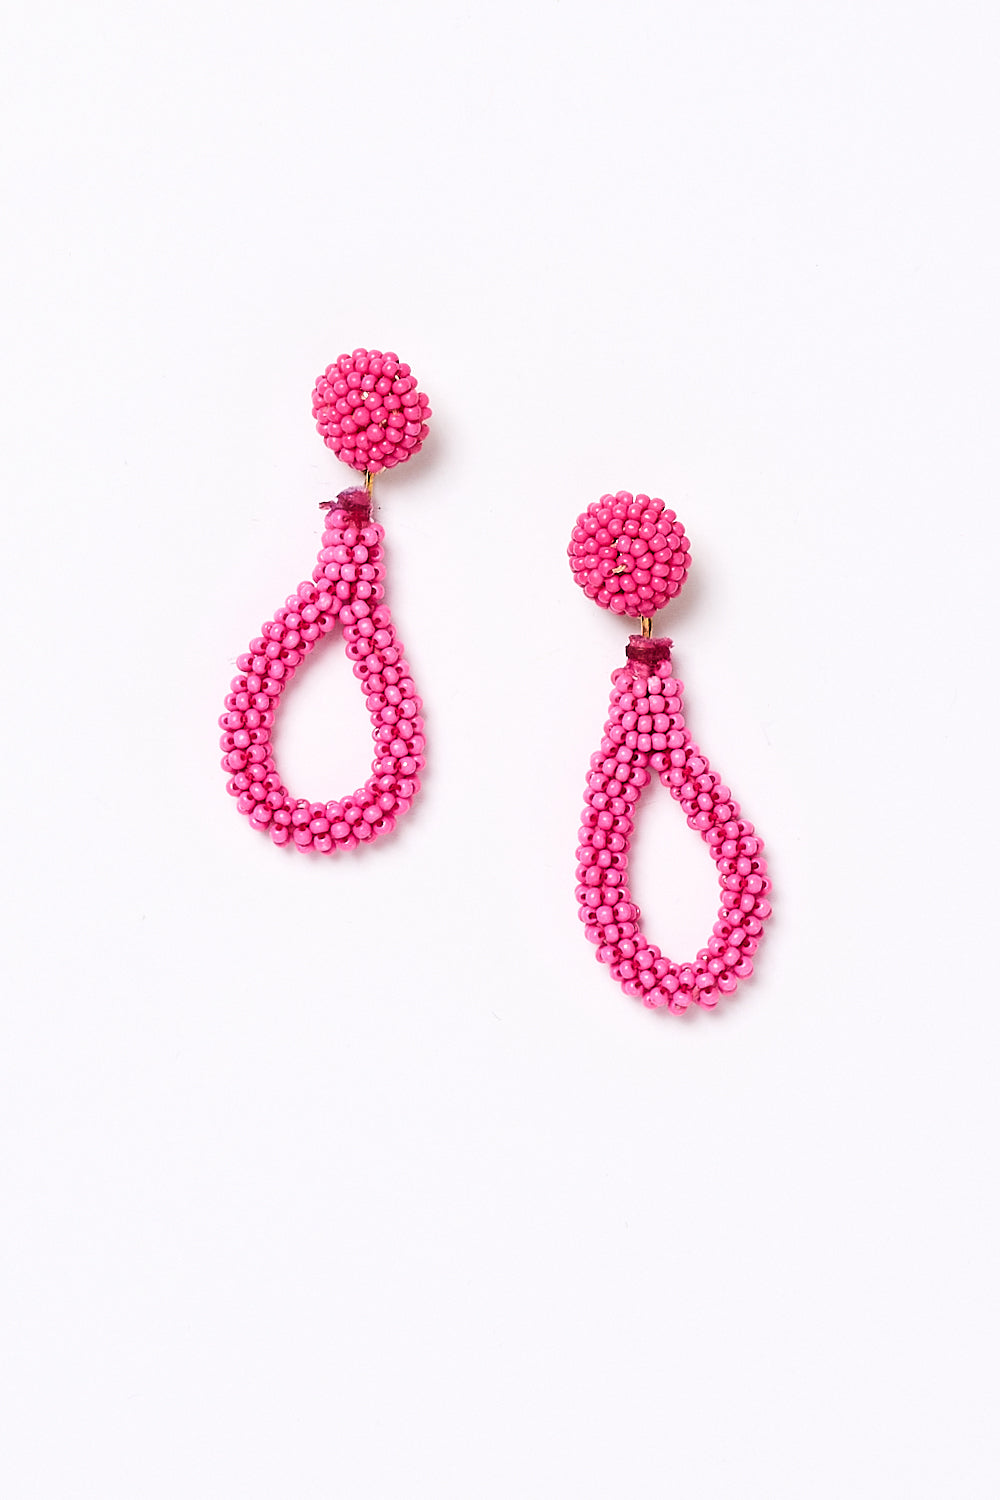 Teardrop Beaded Earrings in Hot Pink